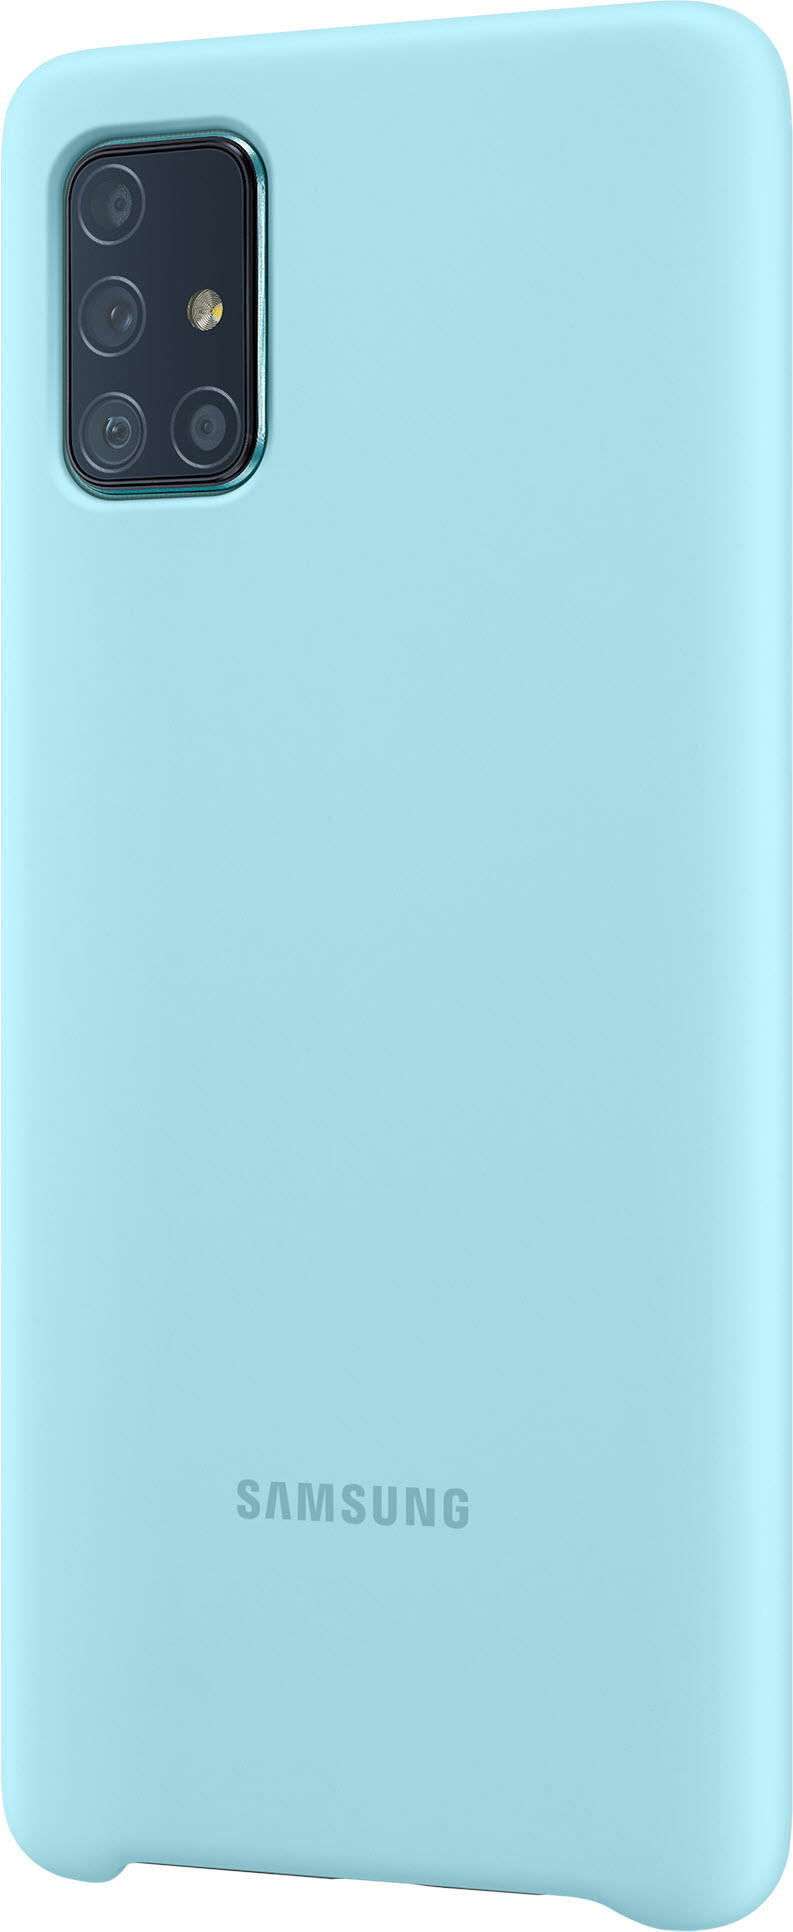 SAMSUNG Blau Galaxy Backcover, EF-PA715, Samsung, A71,